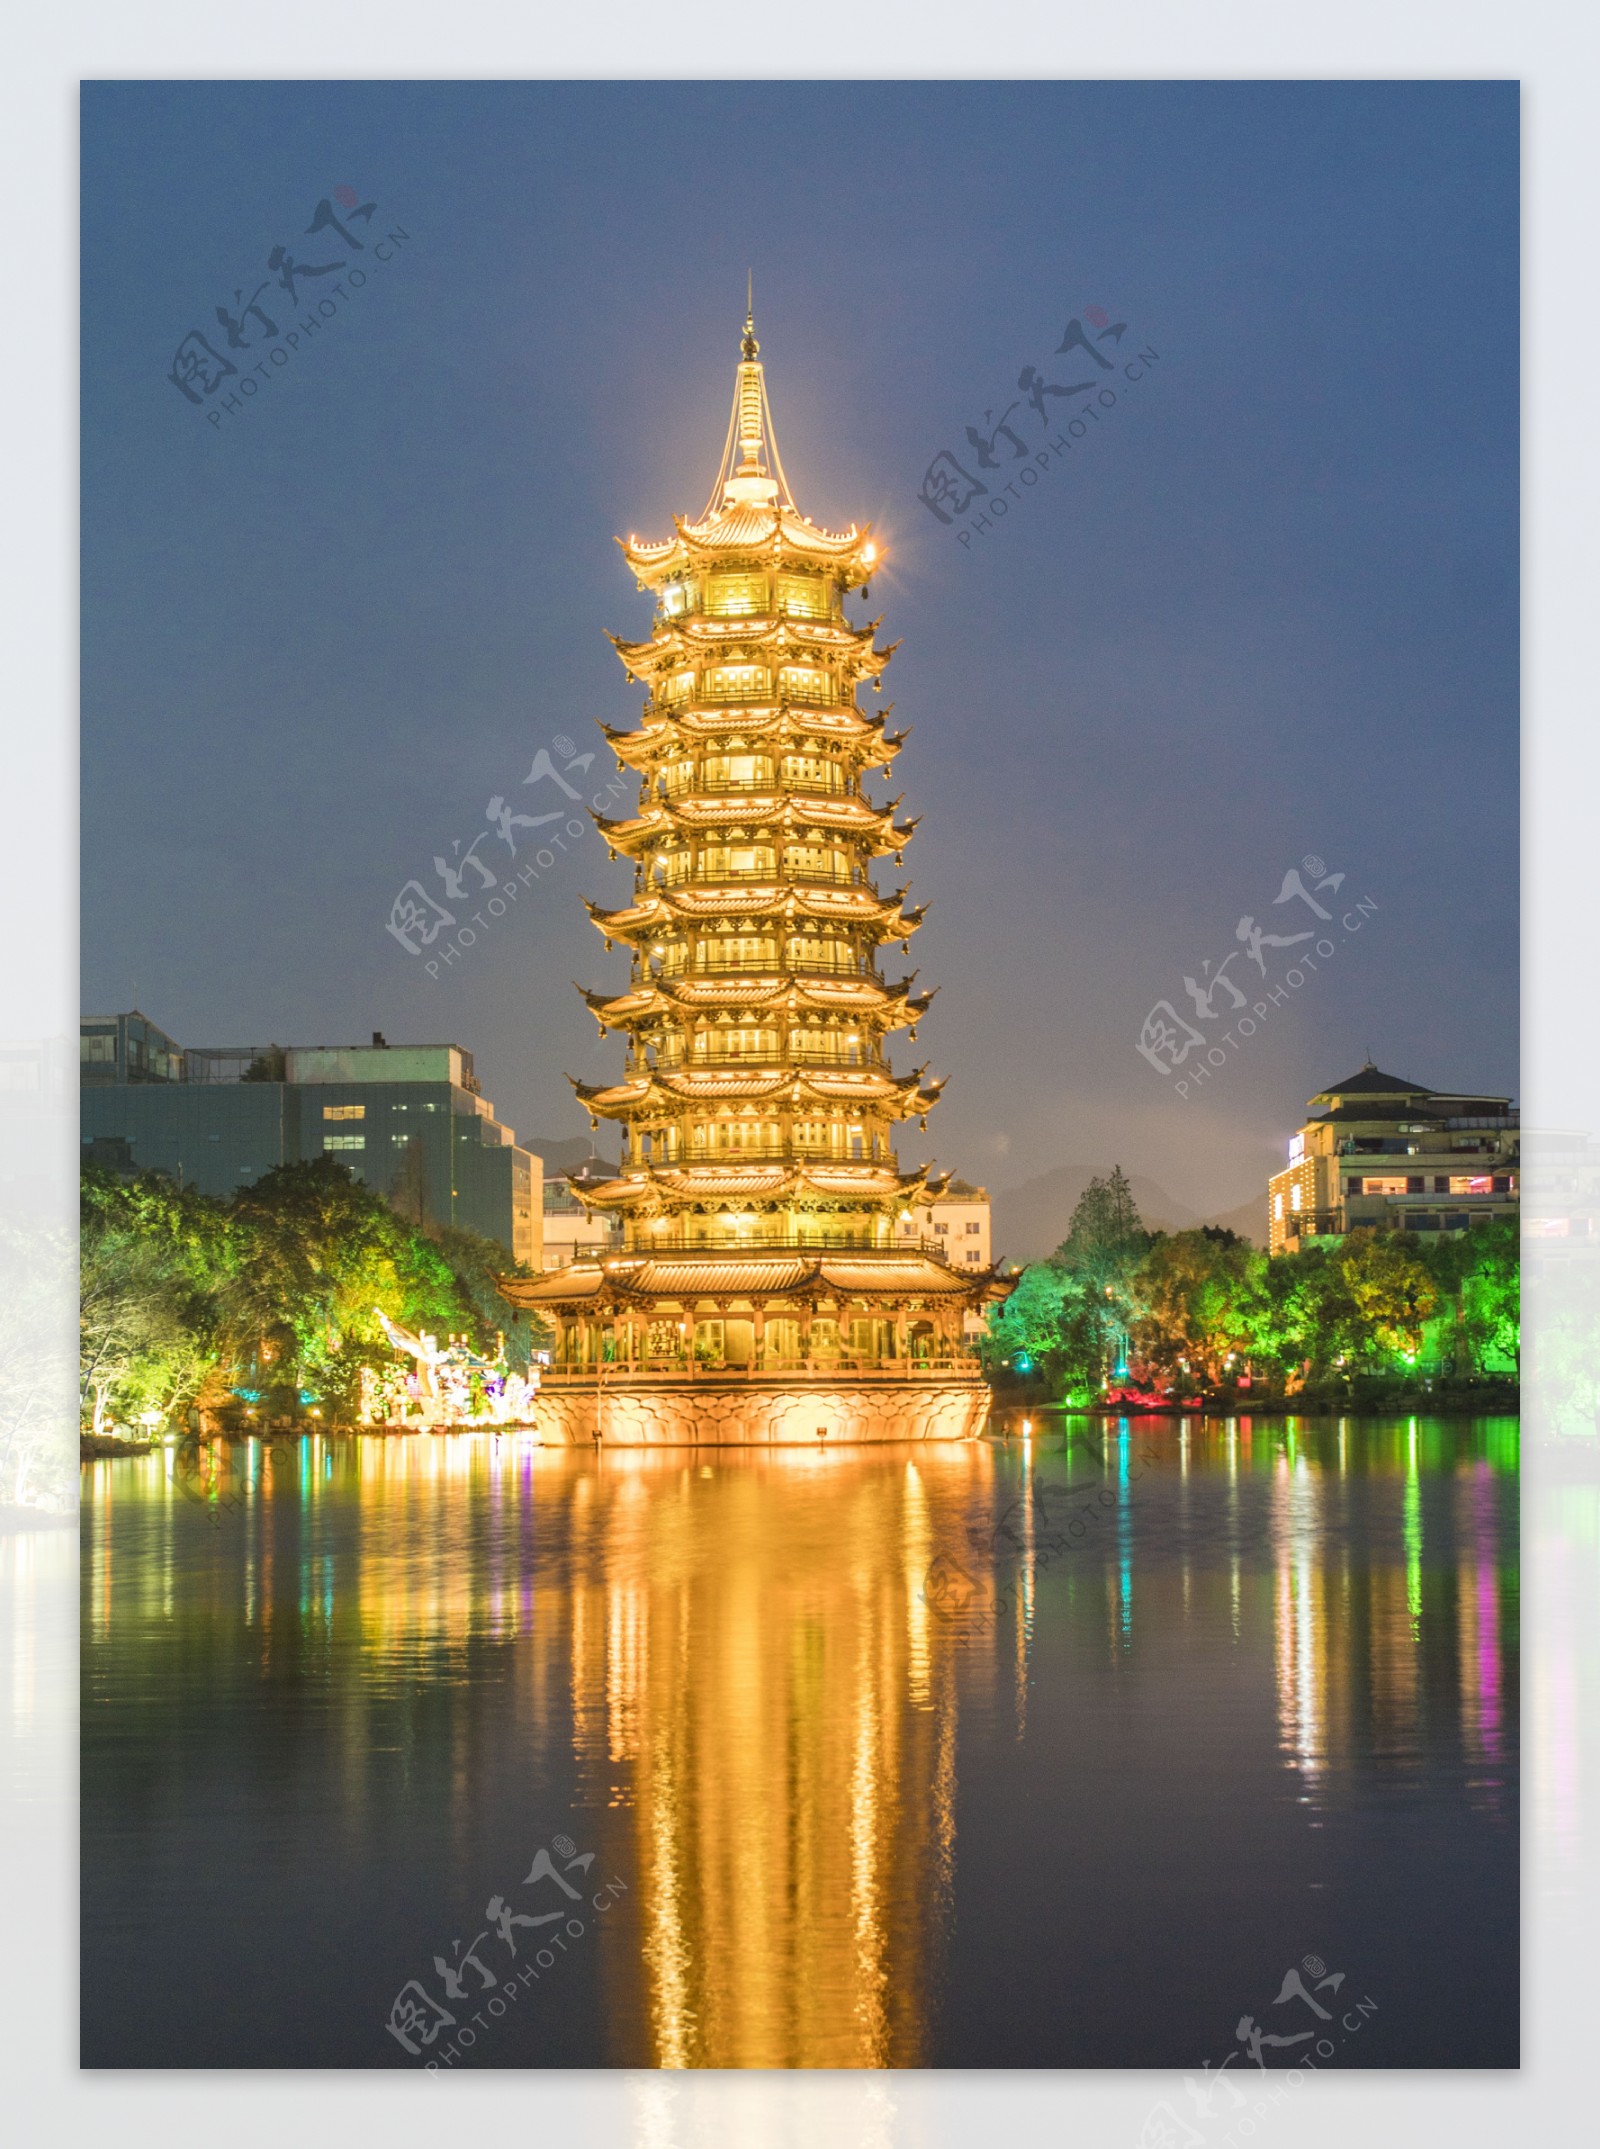 旅游城市桂林的日月塔